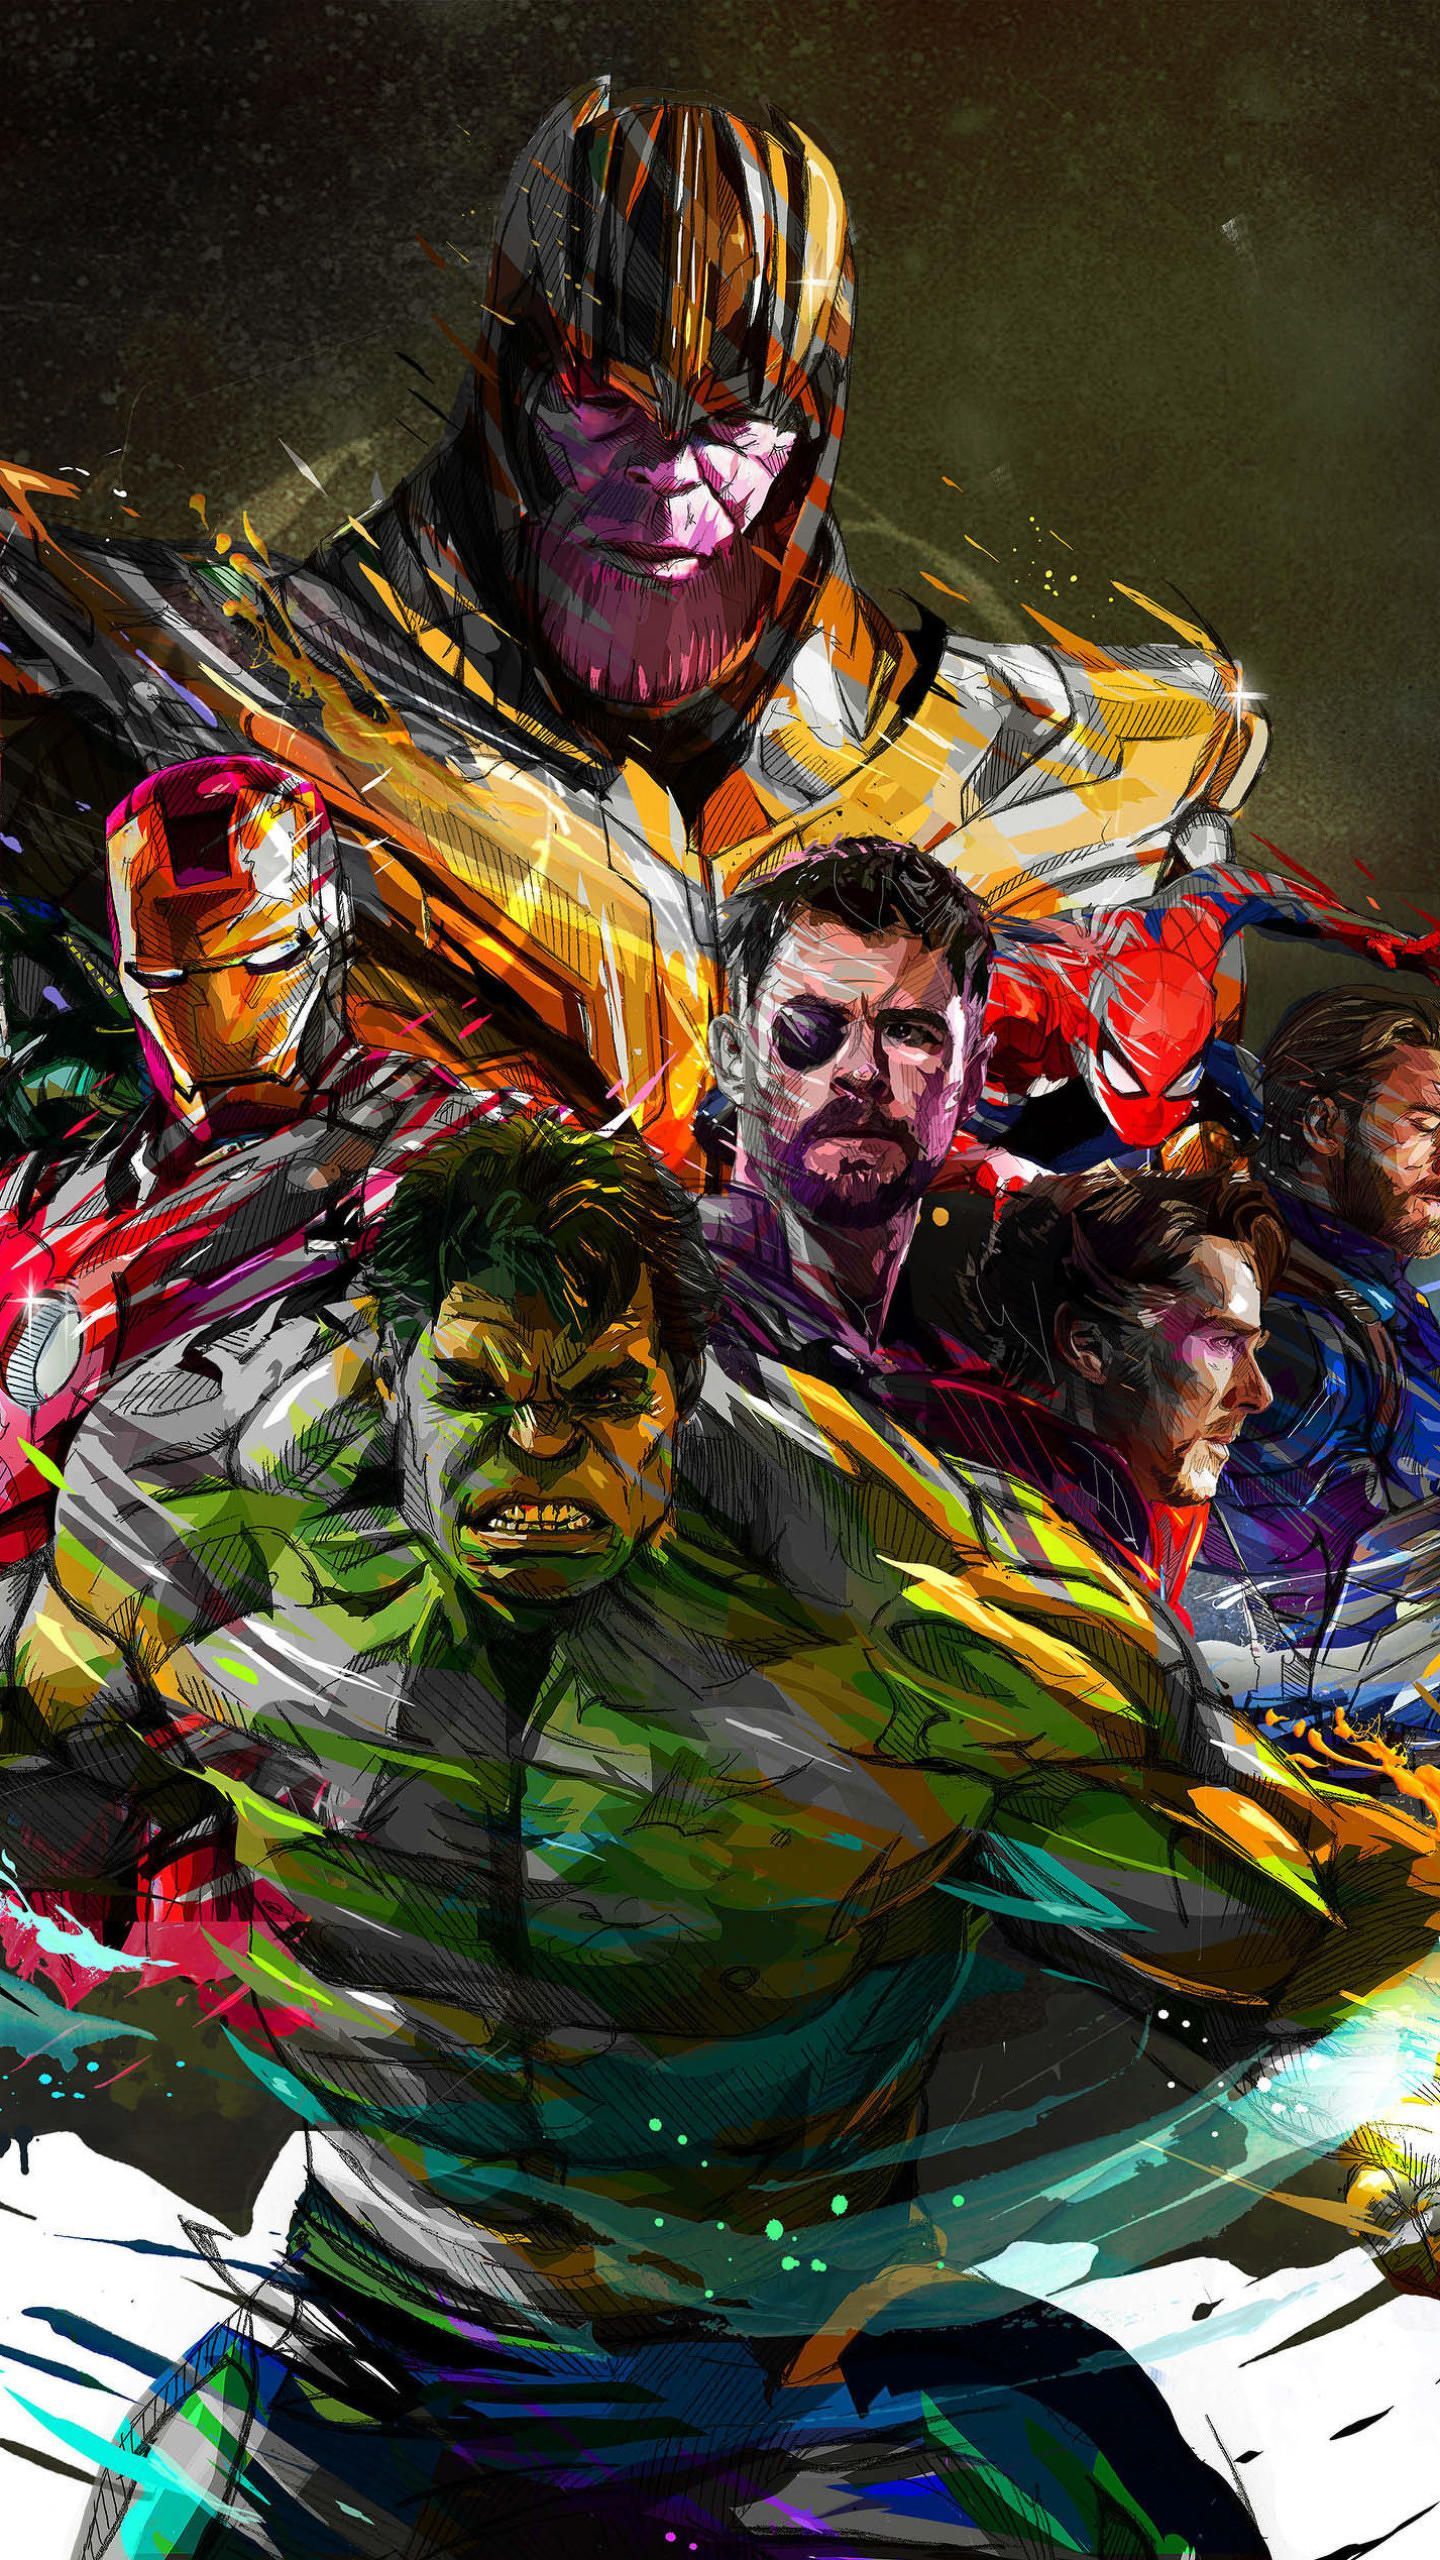 Marvel Avengers, HD Superheroes Wallpaper Photo and Picture. Avengers art, Avengers wallpaper, Superhero art